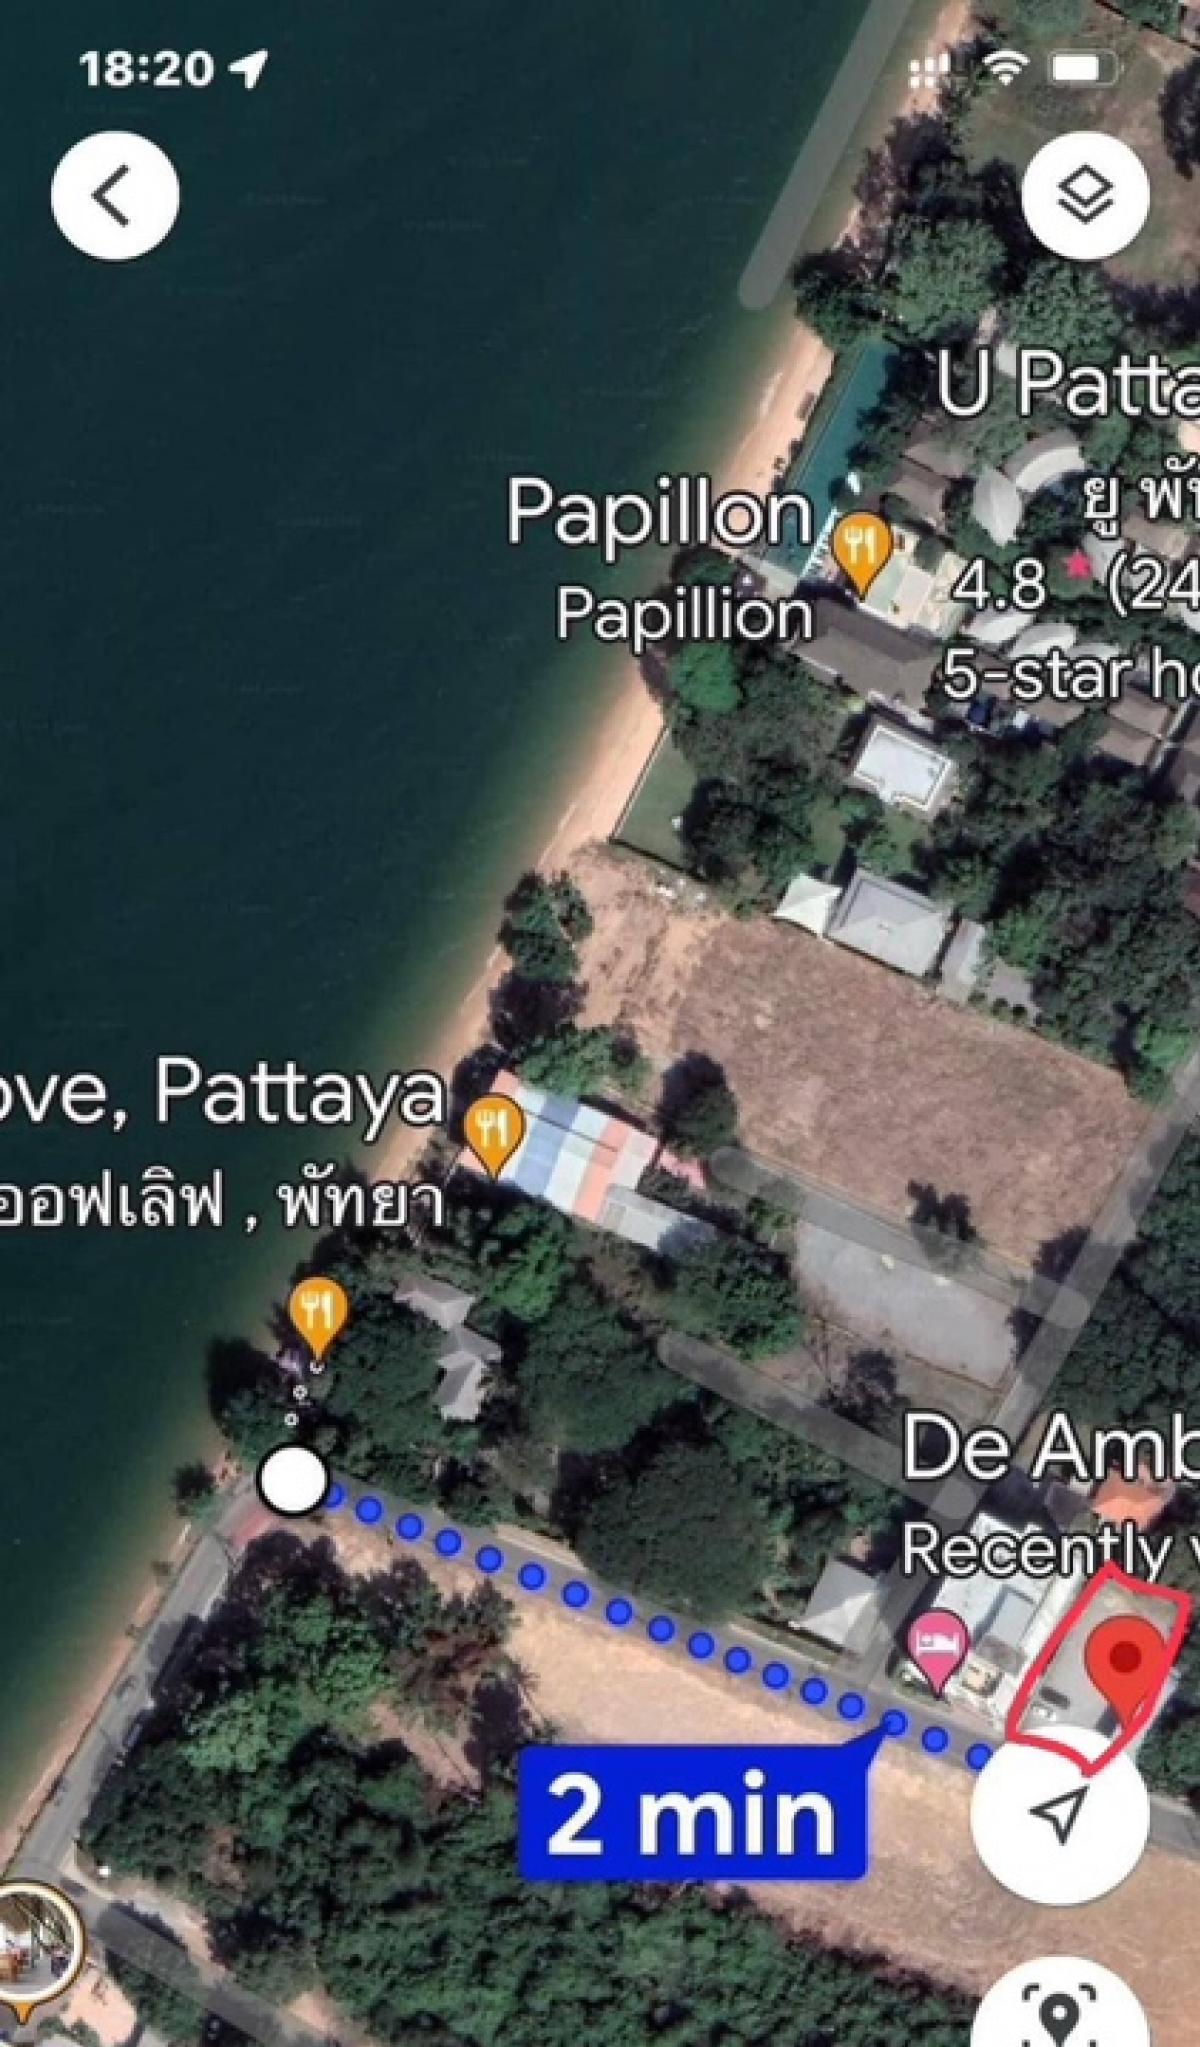 ขายที่ดินพัทยา บางแสน ชลบุรี สัตหีบ : Land for sale near Bangsarey beach/ขายที่ดินสามารถเดินไปหาดได้เพียง 2นาที